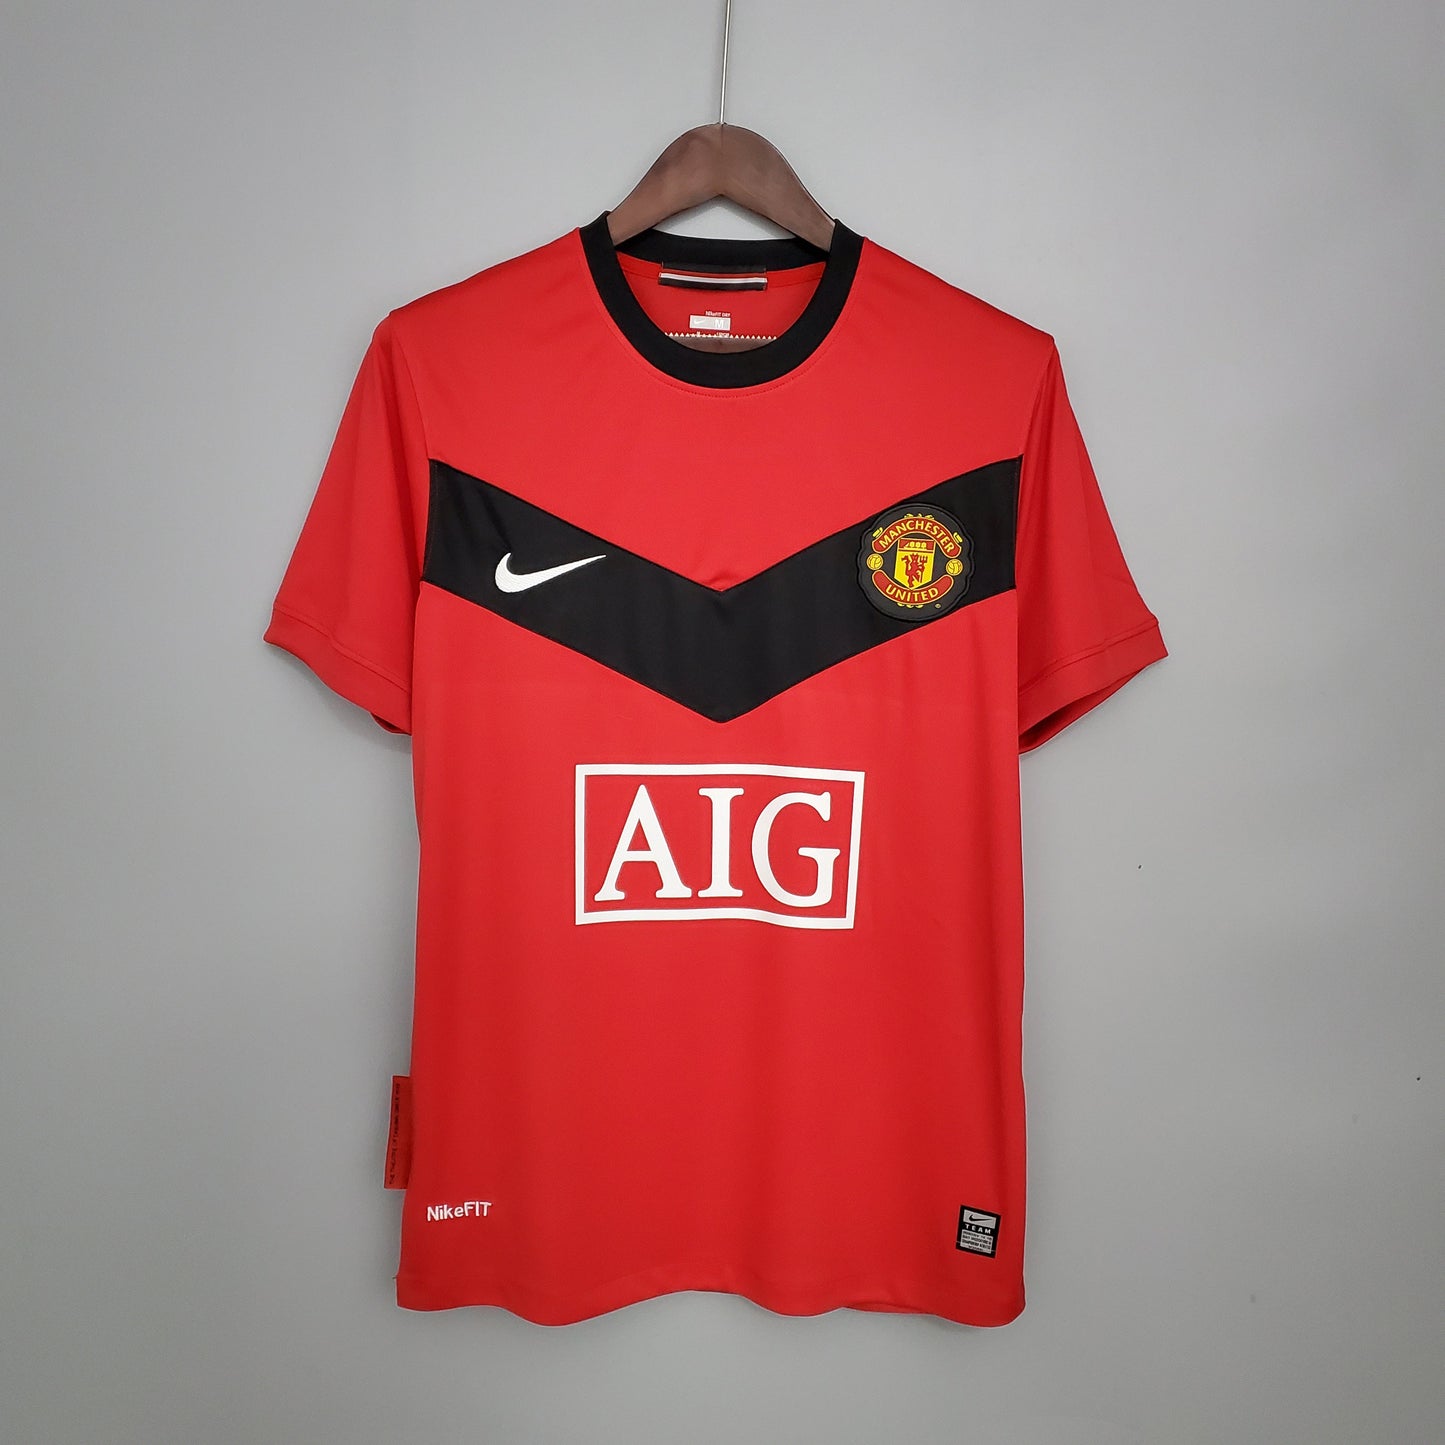 Retro Manchester United Home Kit 09/10